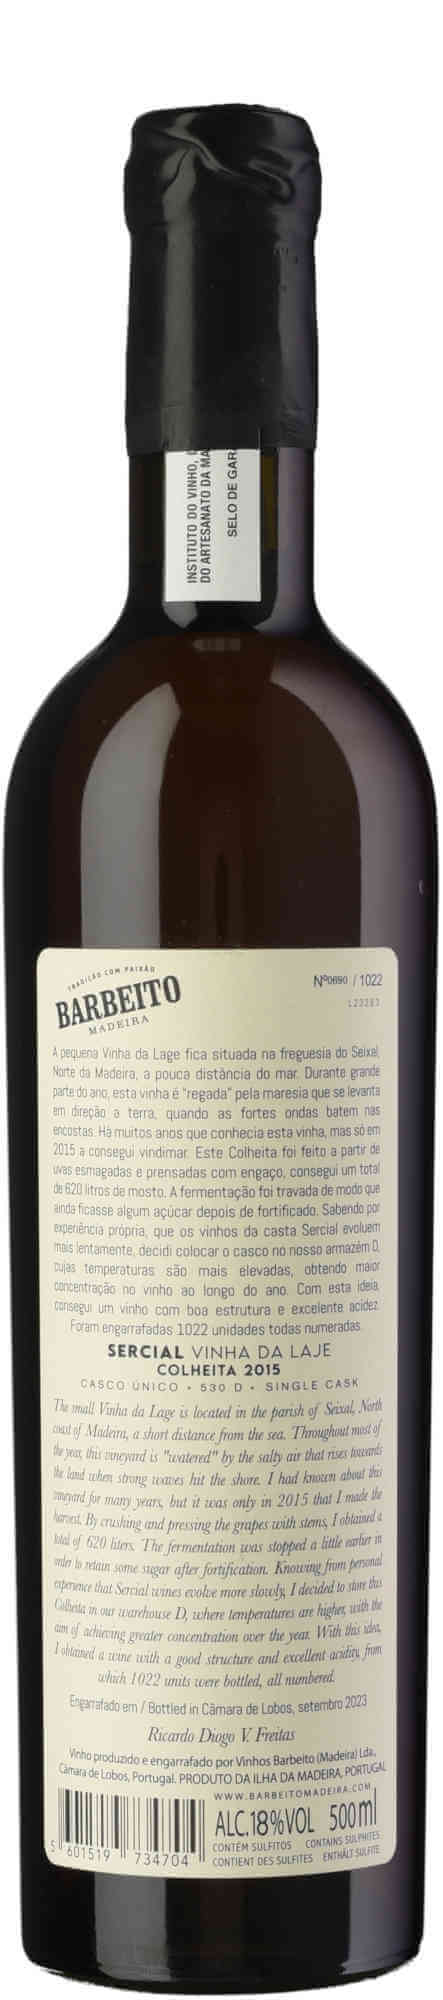 Barbeito-Sercial-Vinha-da-Laje-2015-back